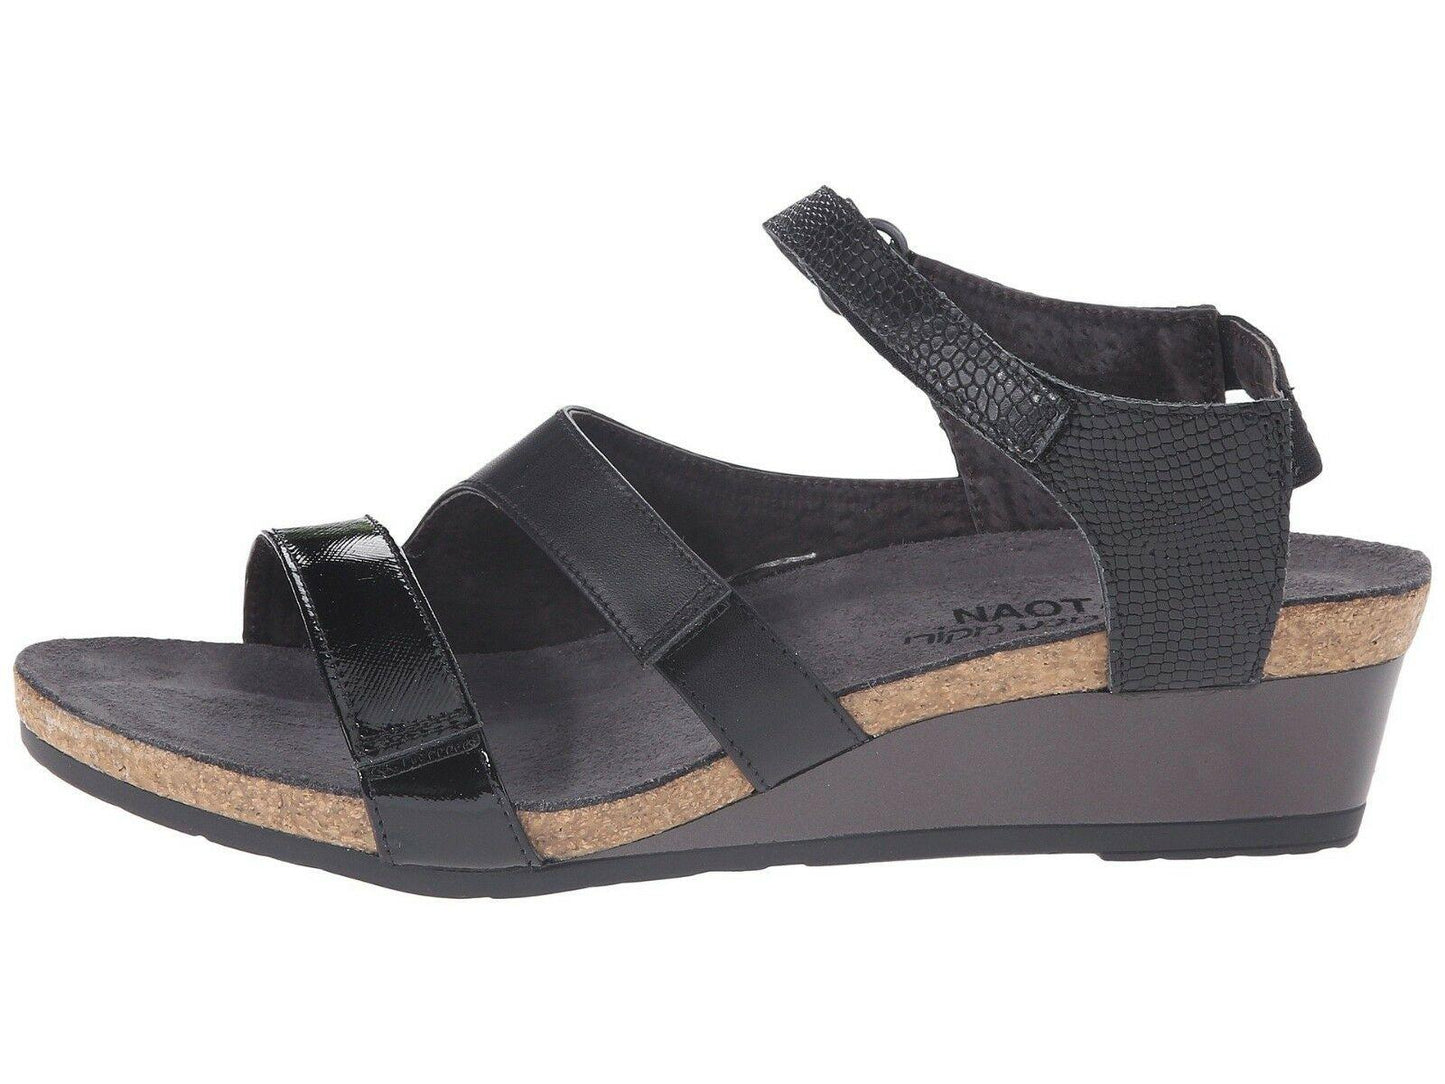 Naot Goddess Women Sandals Black Leather Shoes Wedge Platform Size EUR  42 - SVNYFancy